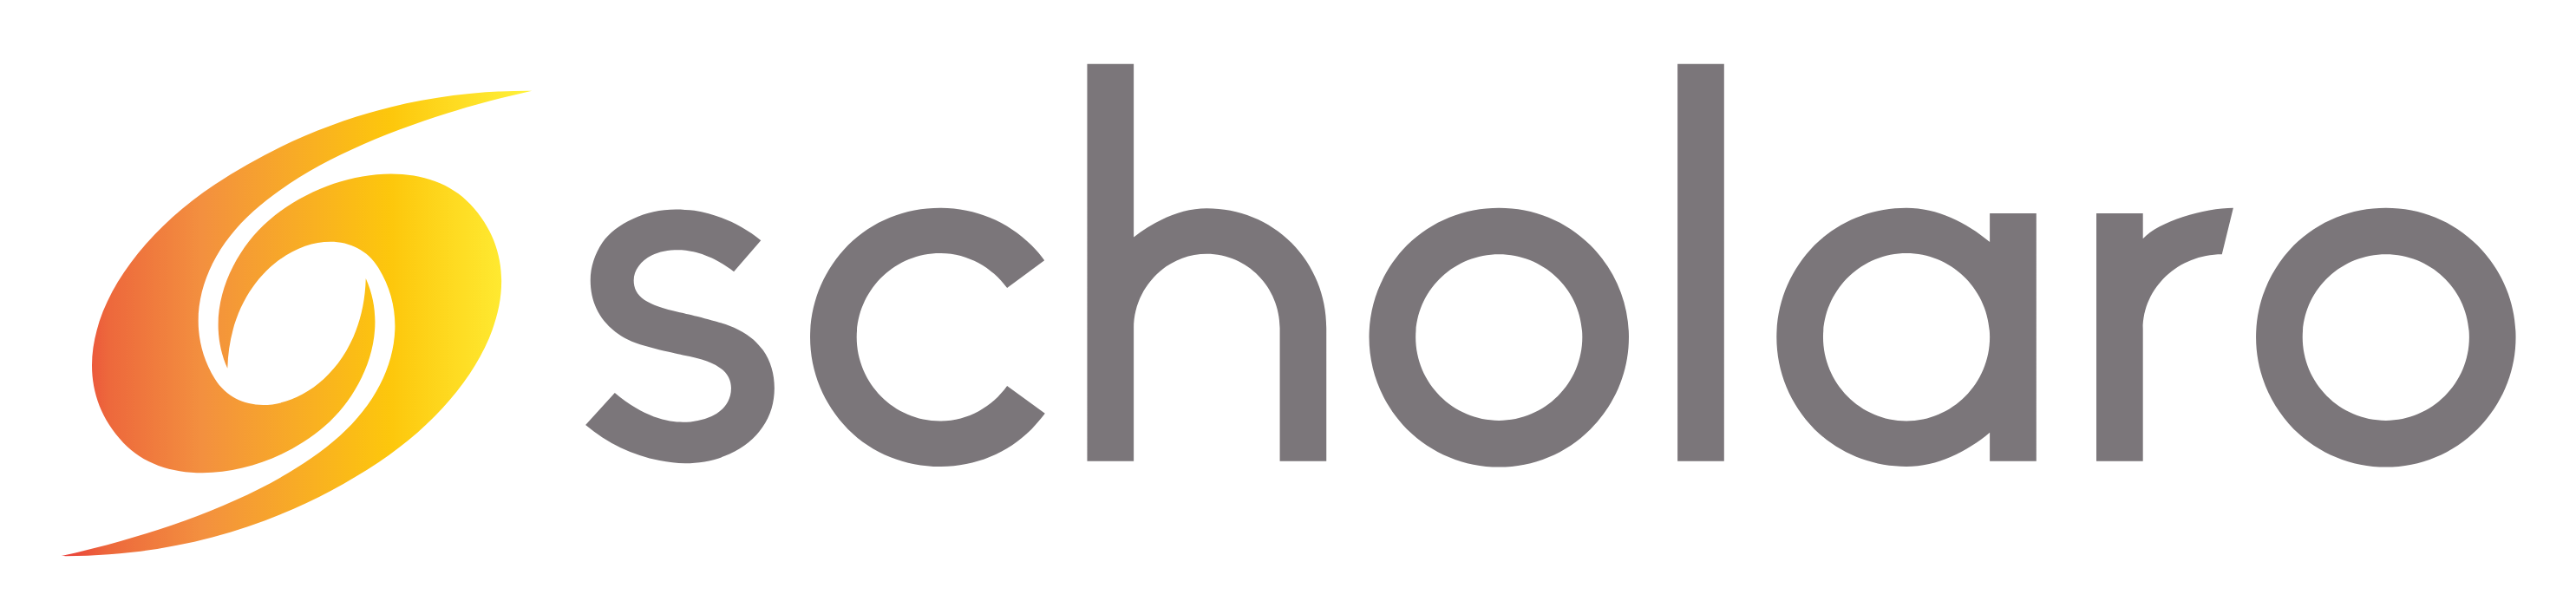 scholaro-logo